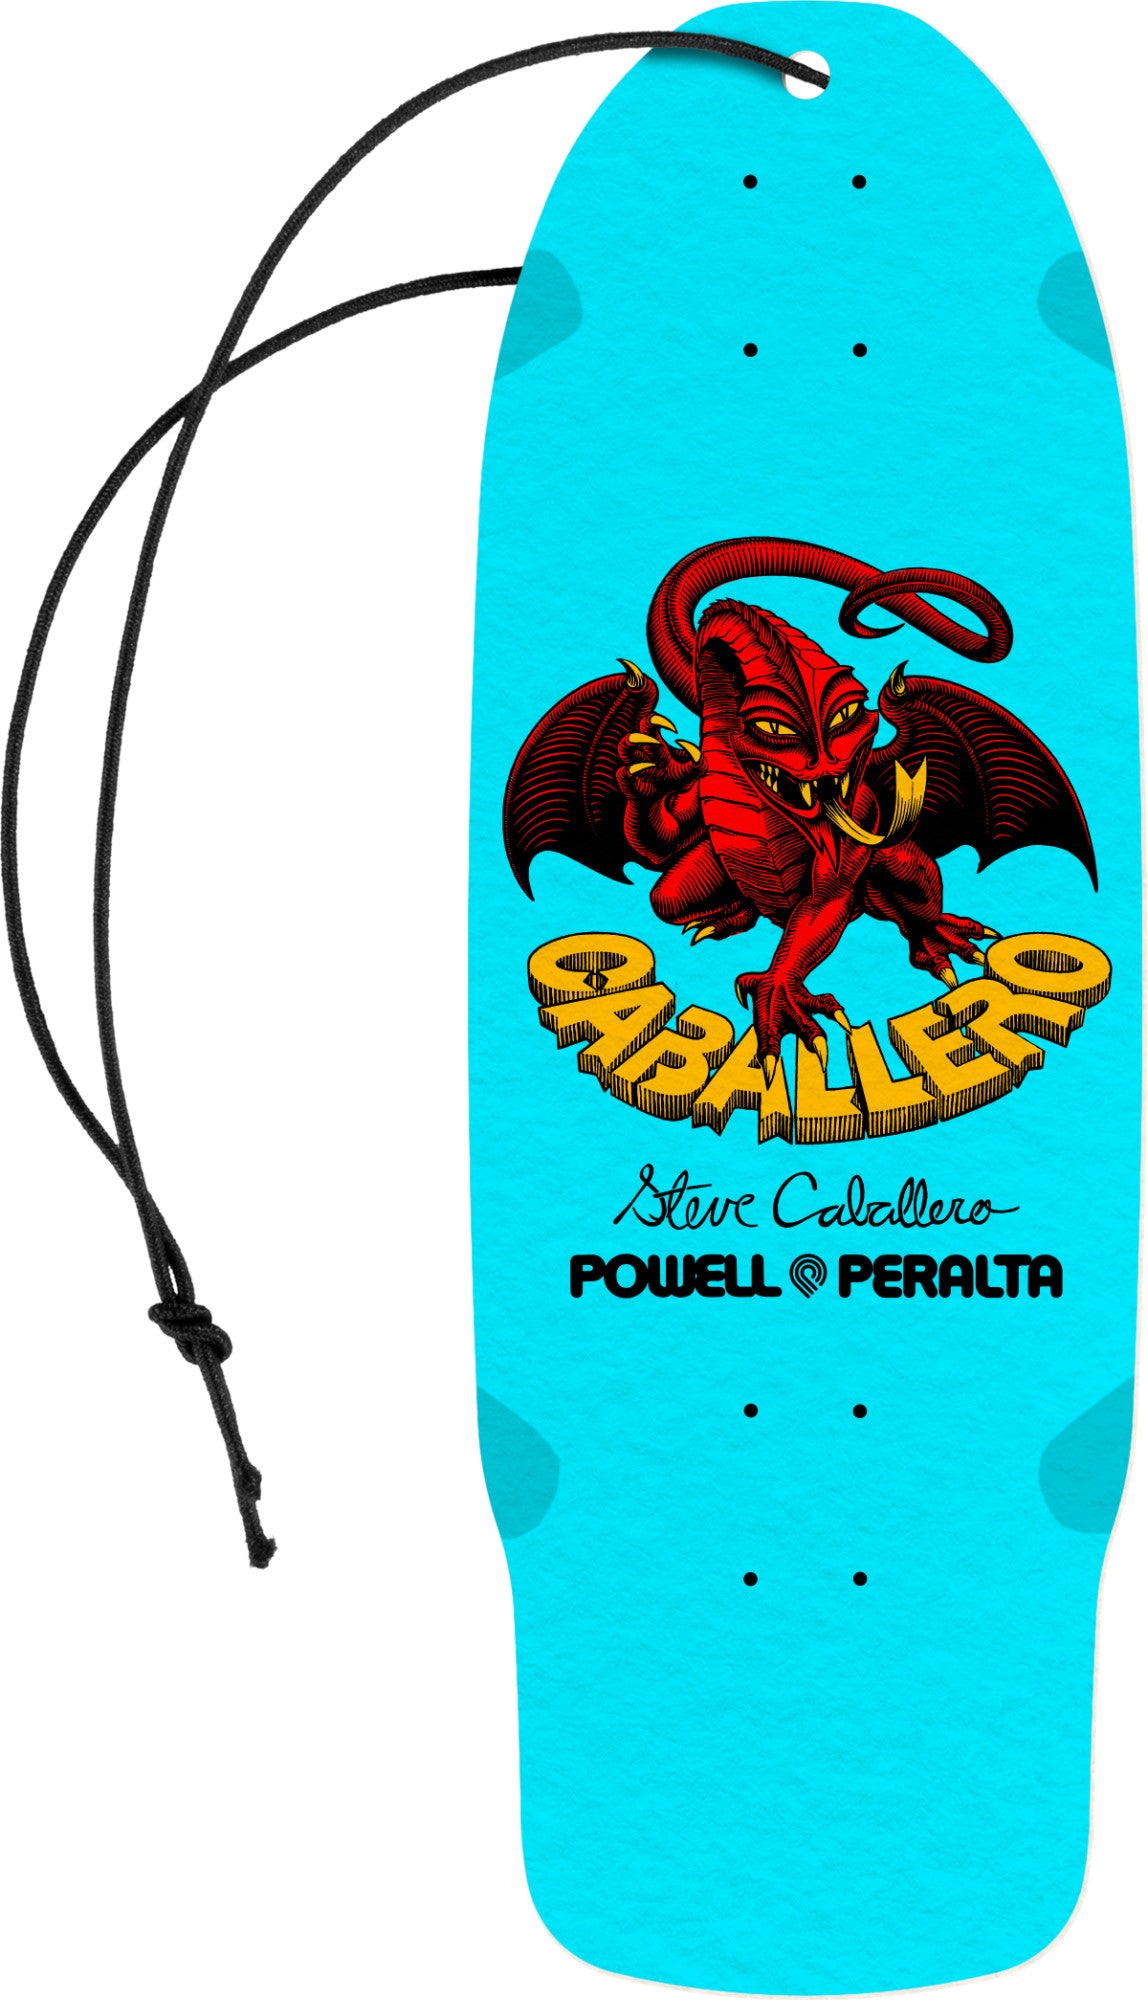 POWELL PERALTA Bones Brigade Series 15 Air Freshener - Caballero